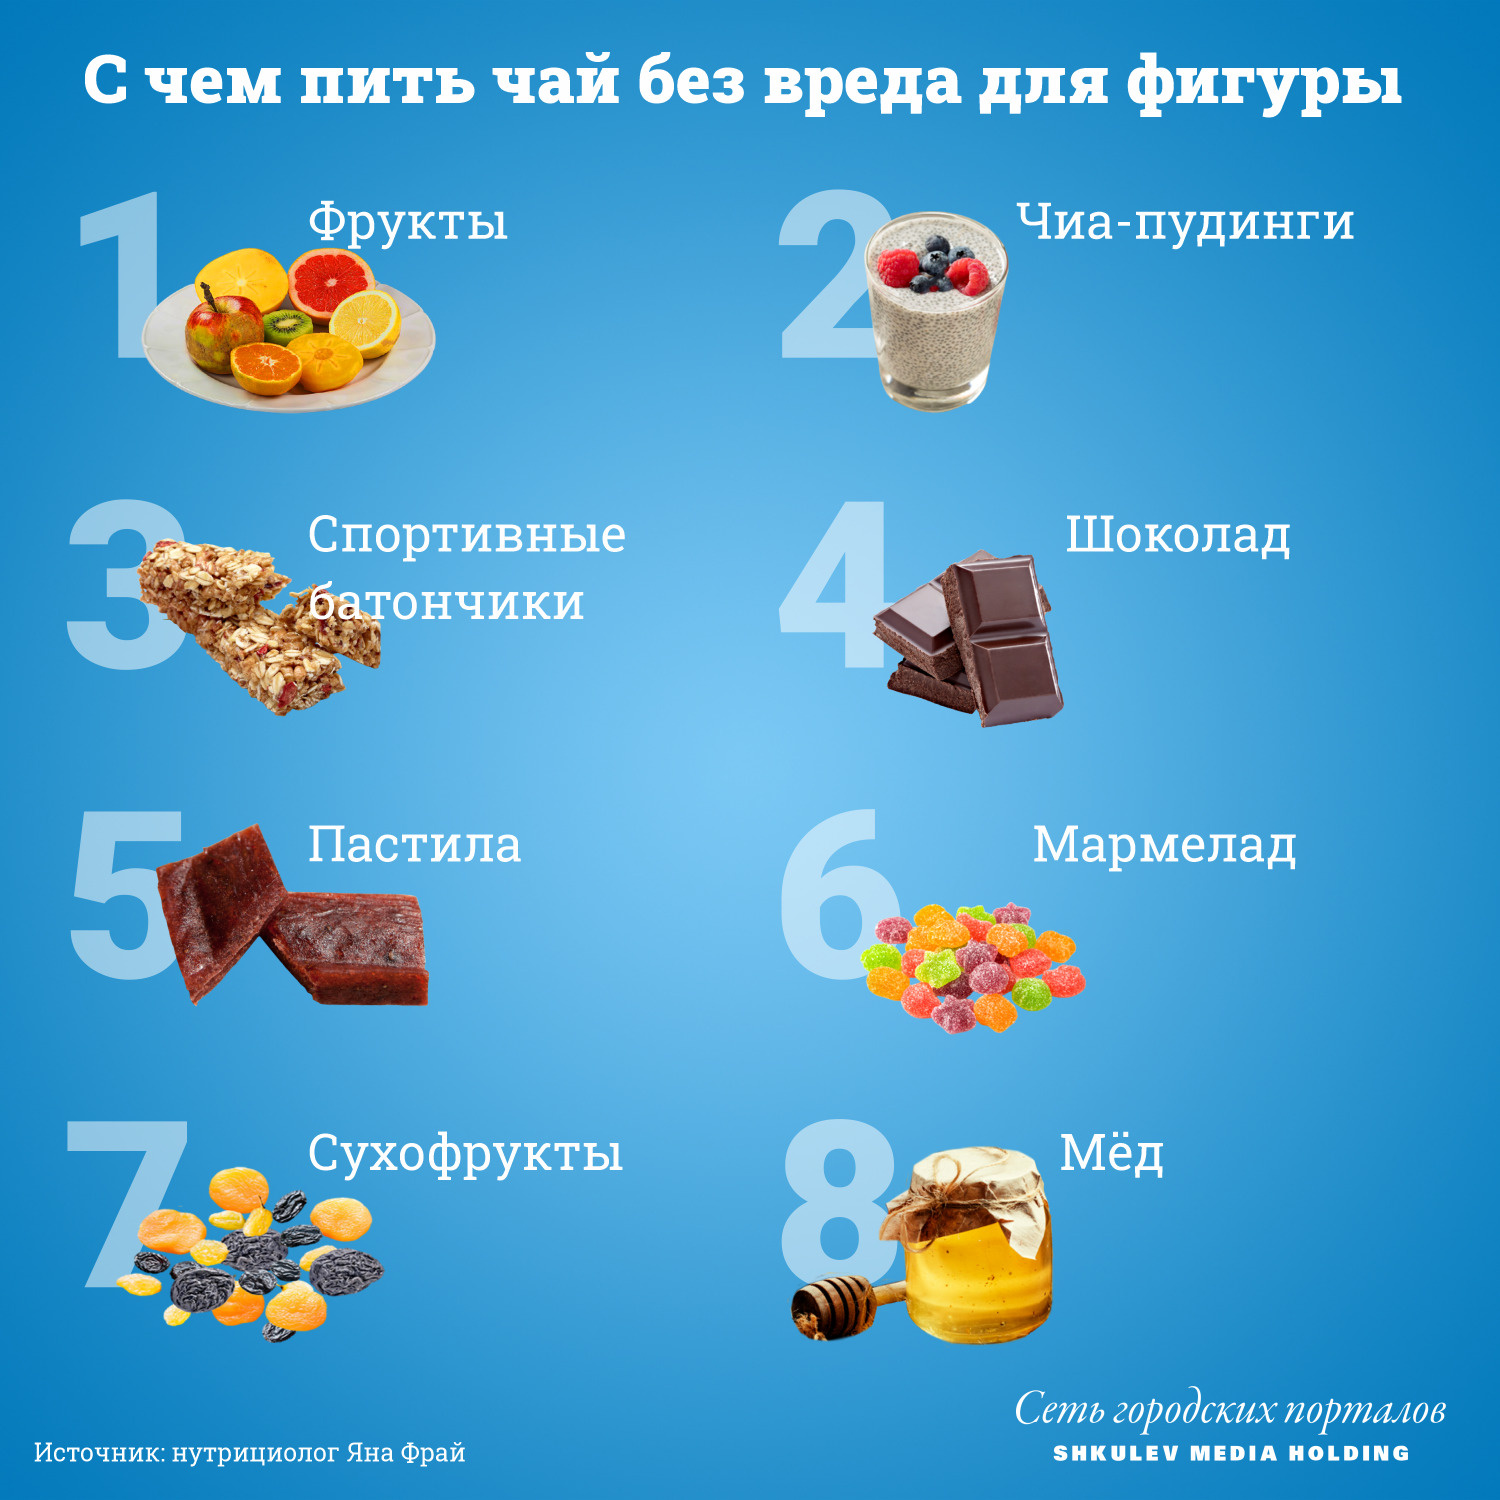 15 блюд, которые следует есть людям с диабетом - натяжныепотолкибрянск.рф